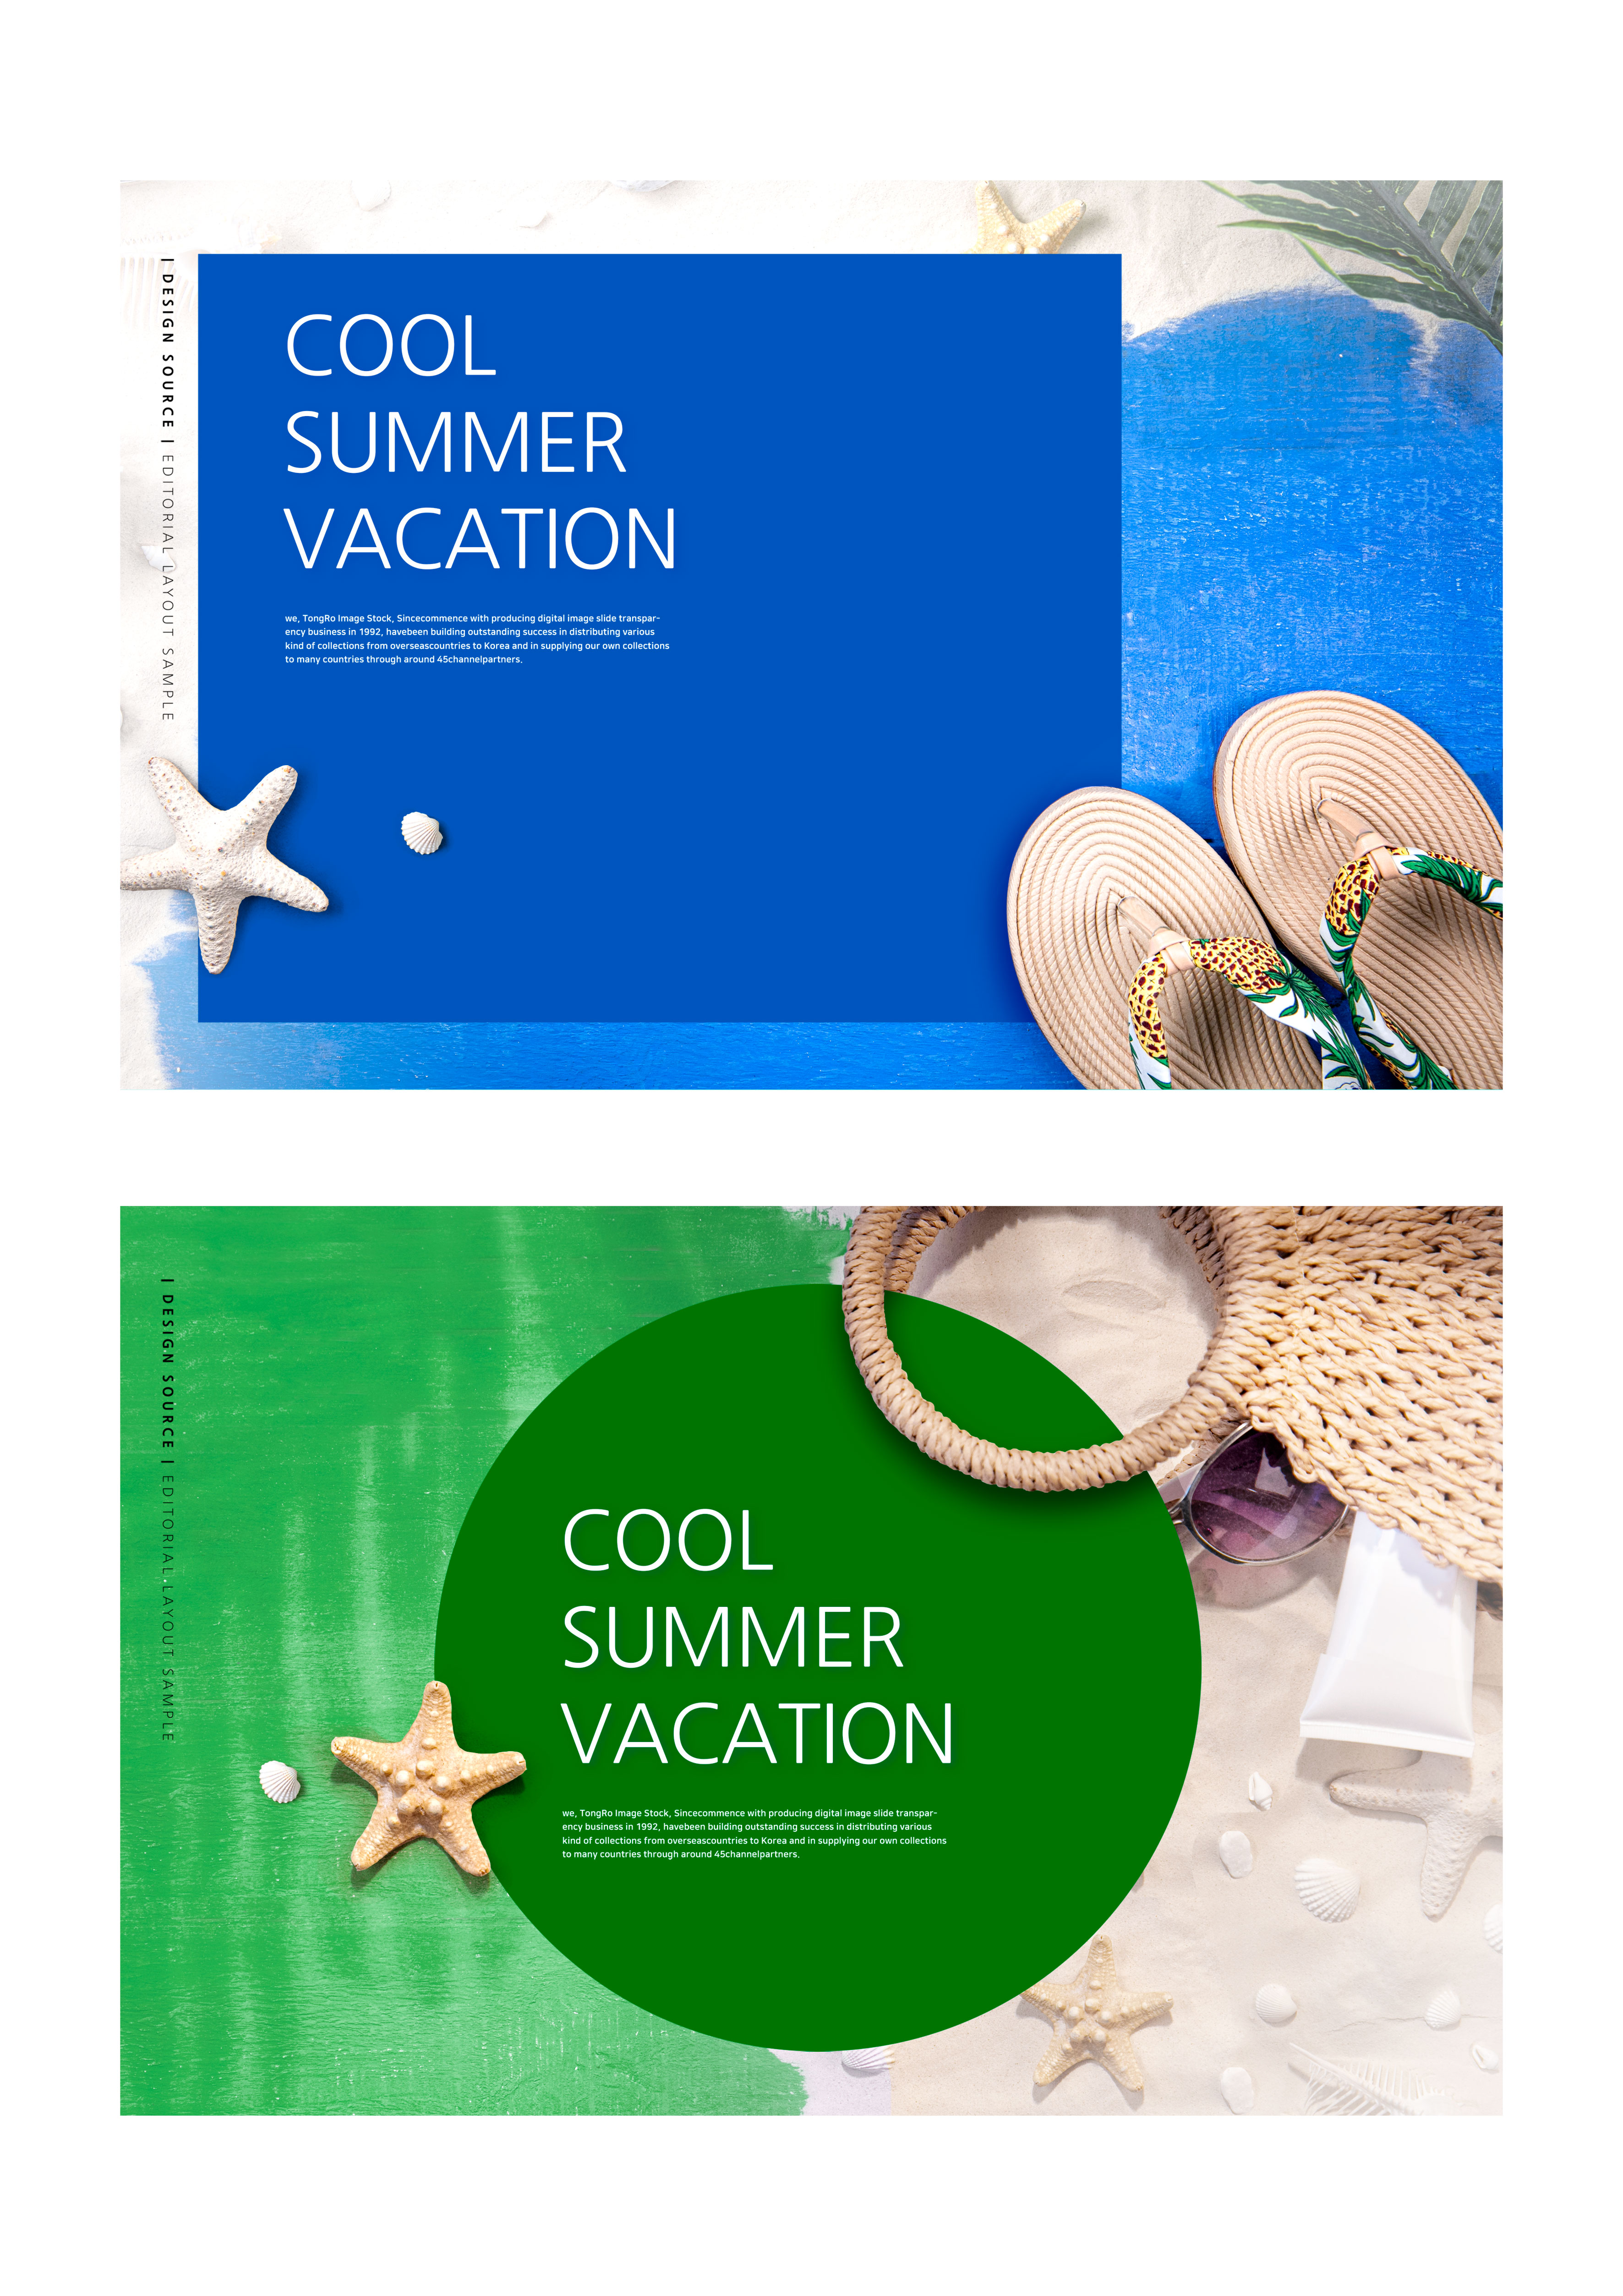 十分简约清新的暑假活动广告Banner模板插图